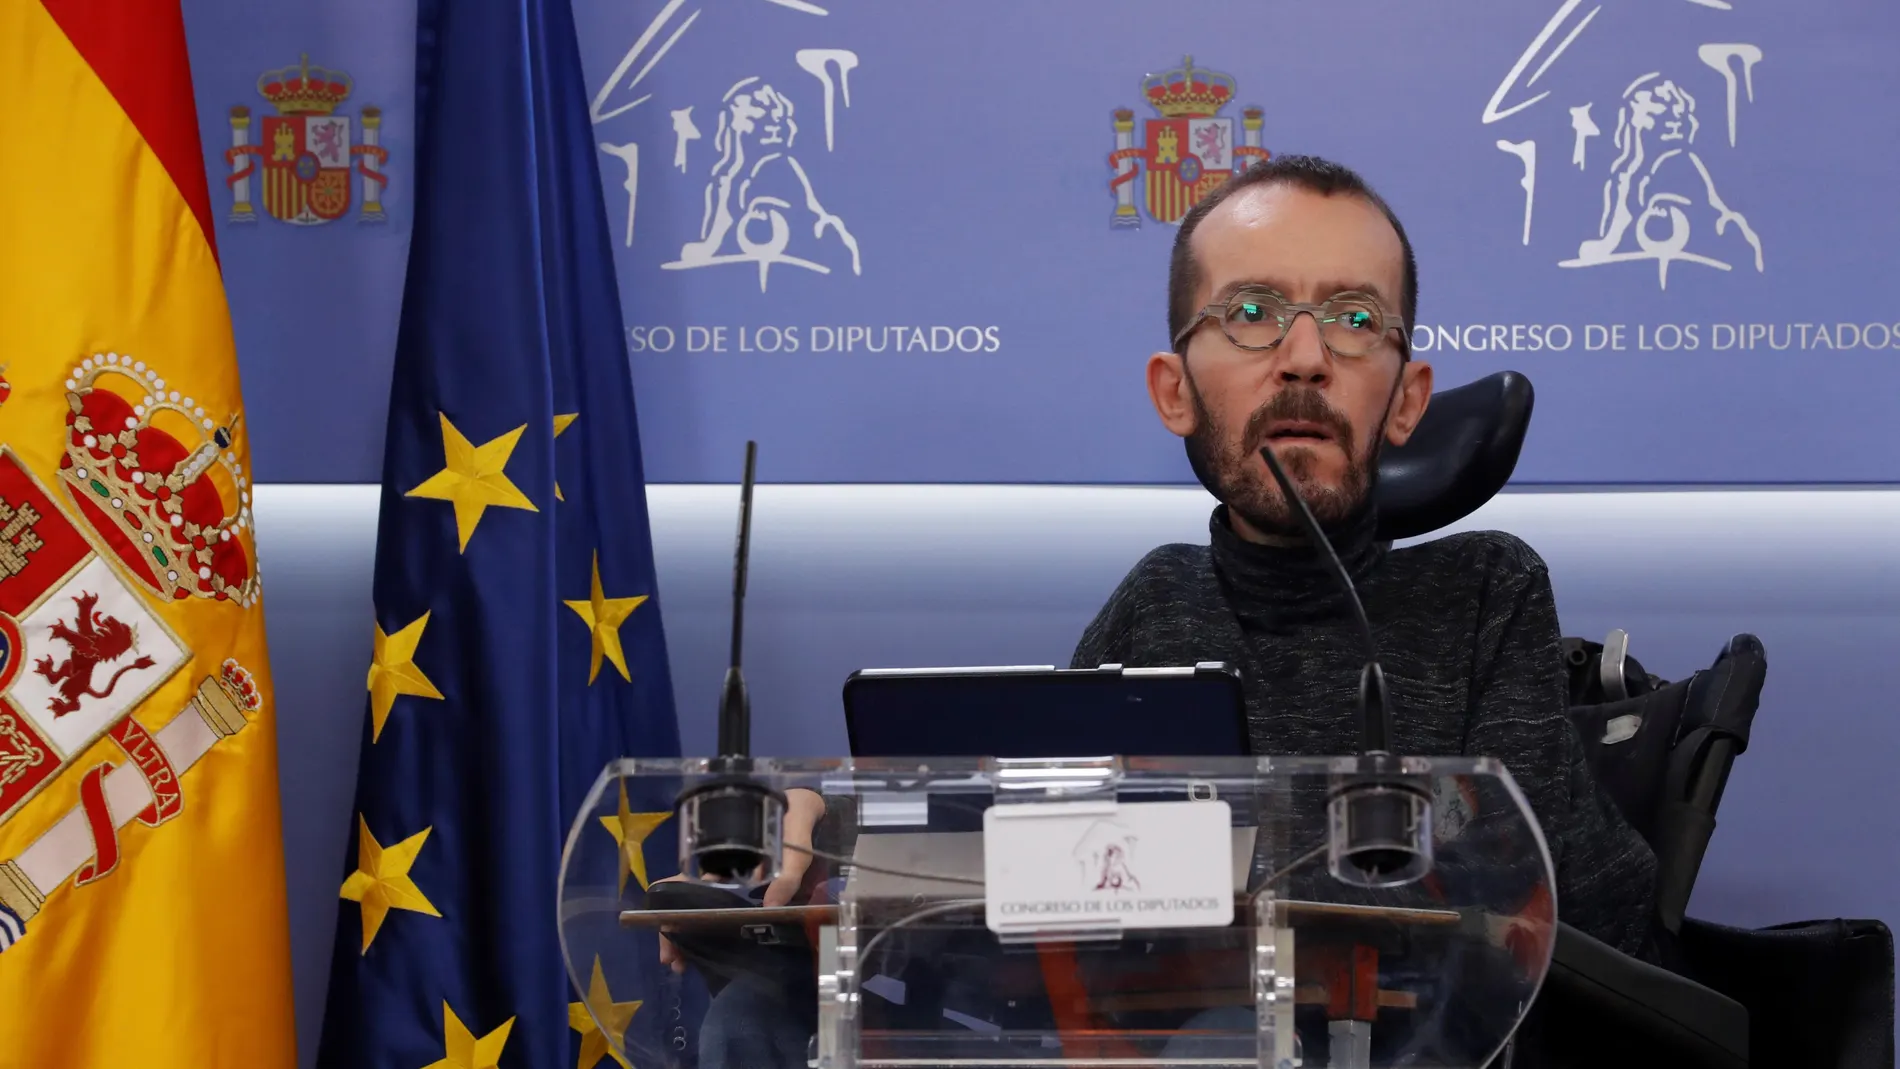 El portavoz de Unidas Podemos en el Congreso de los Diputados, Pablo Echenique, ofrece una rueda de prensa después de la reunión de la Junta de Portavoces del Congreso este martes en Madrid. EFE/ Zipi / POOL